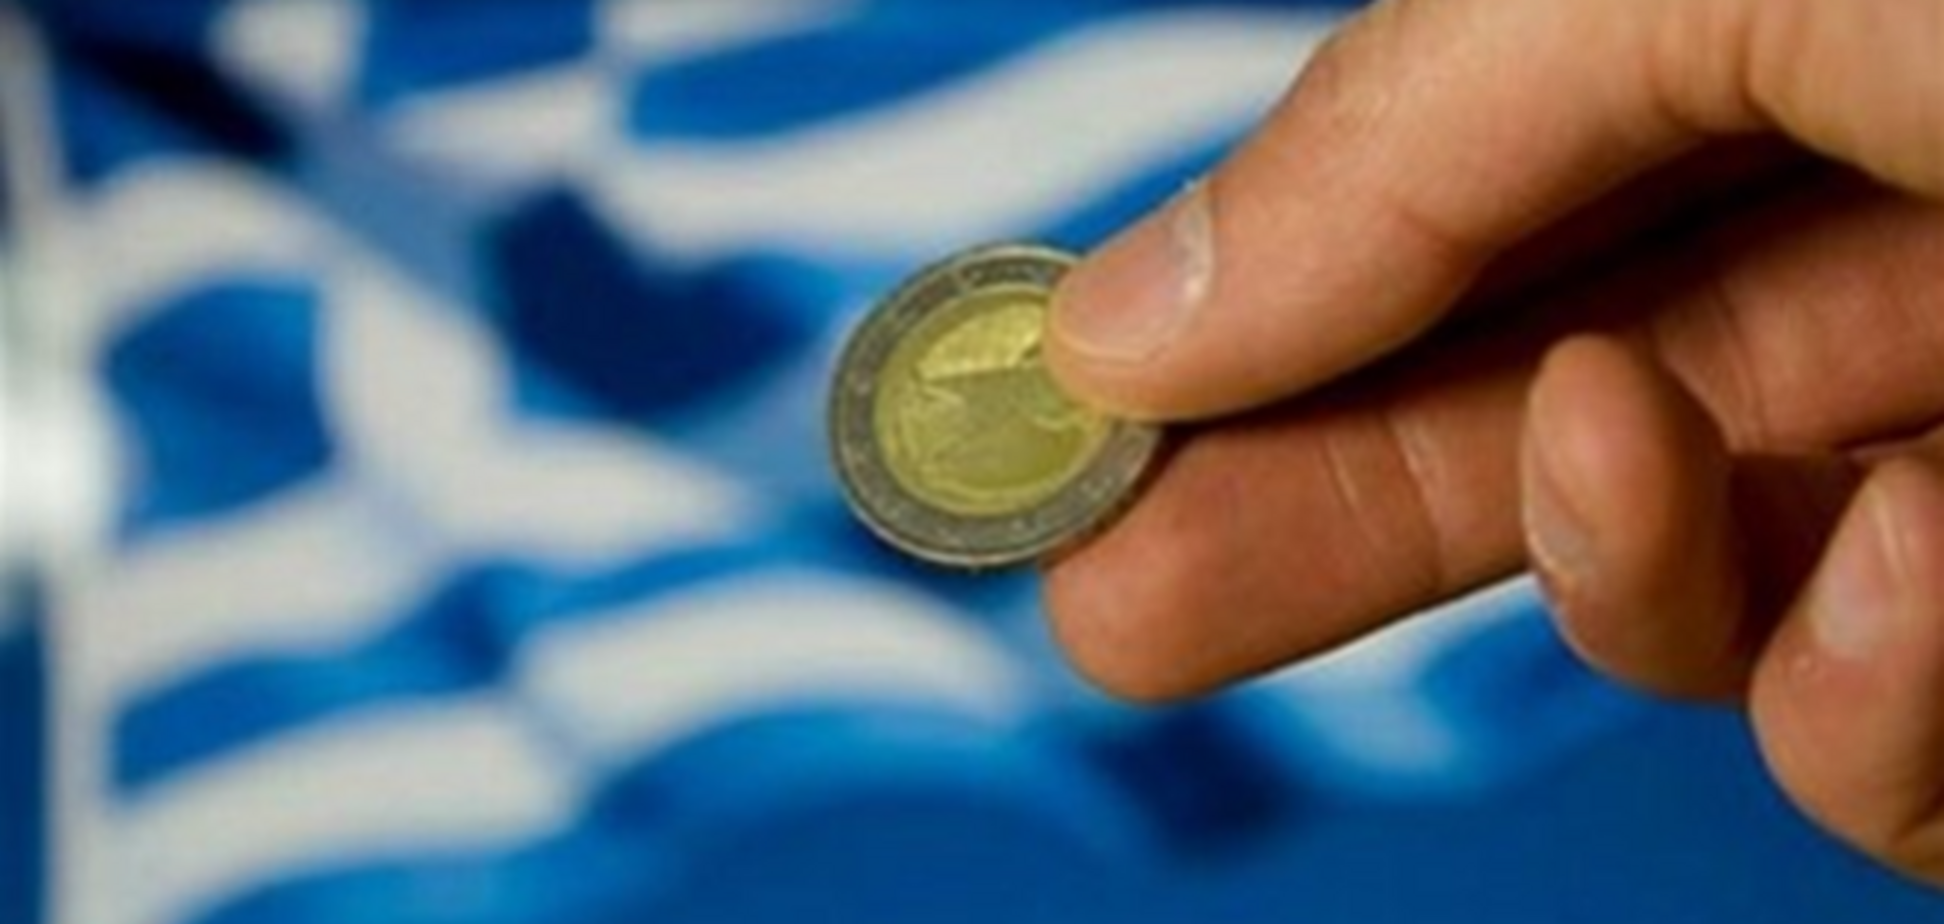 Аналитическая компания Stratfor сделала прогноз по референдуму в Греции 